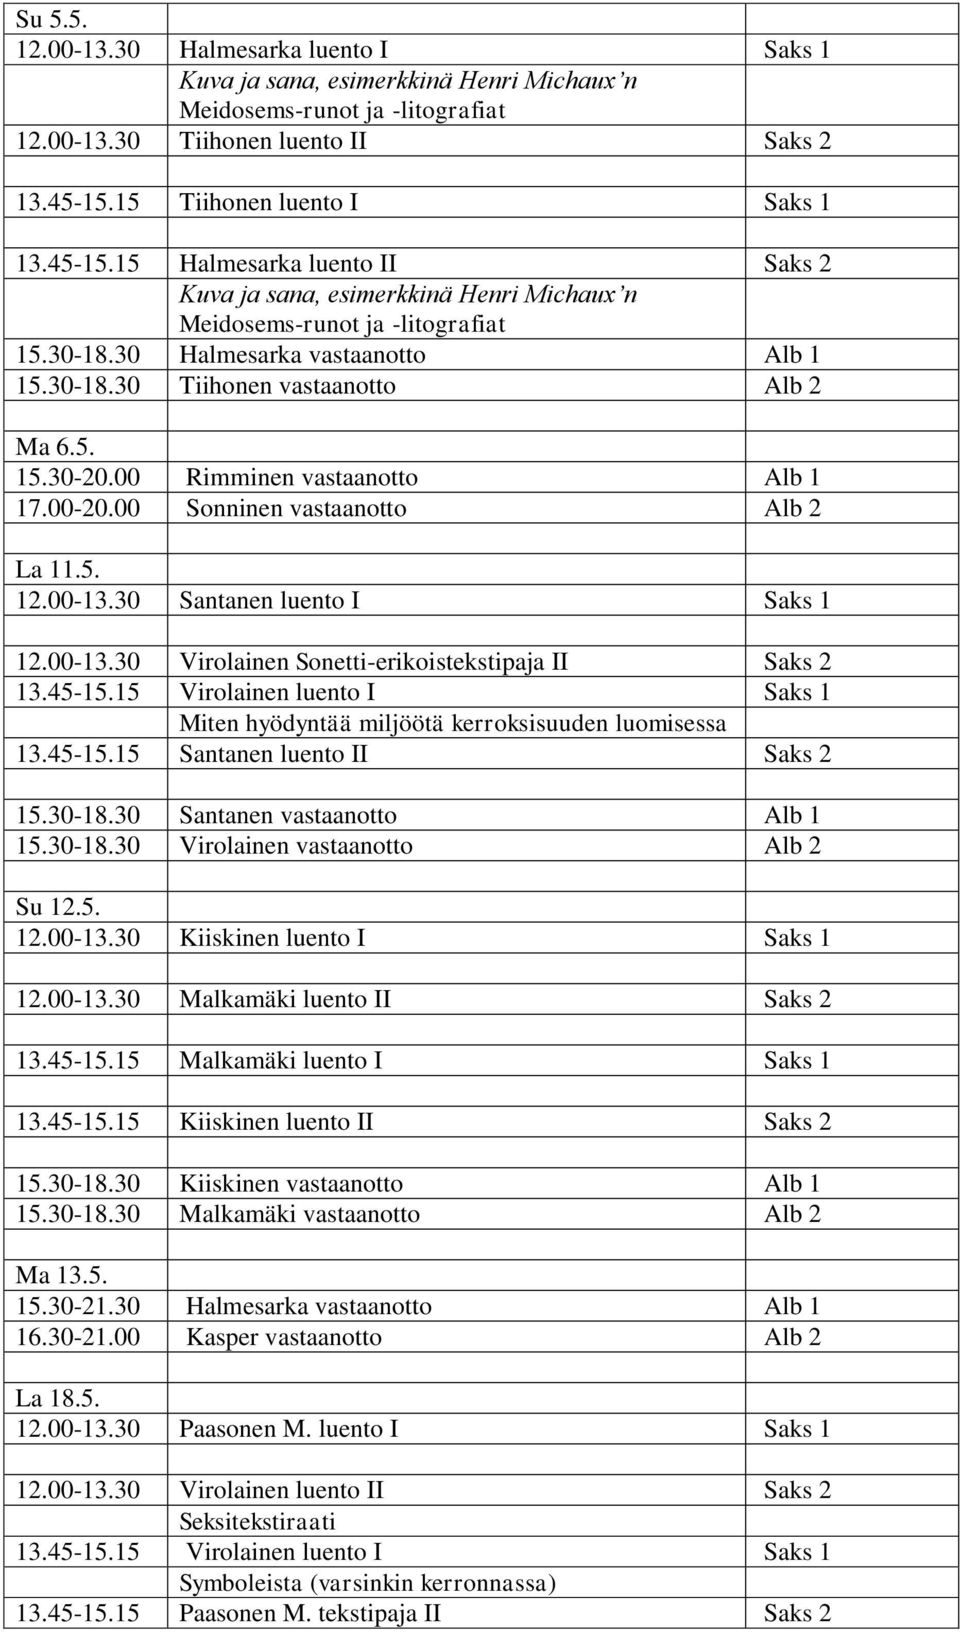 00 Rimminen vastaanotto Alb 1 17.00-20.00 Sonninen vastaanotto Alb 2 La 11.5. 12.00-13.30 Santanen luento I Saks 1 12.00-13.30 Virolainen Sonetti-erikoistekstipaja II Saks 2 Miten hyödyntää miljöötä kerroksisuuden luomisessa 13.